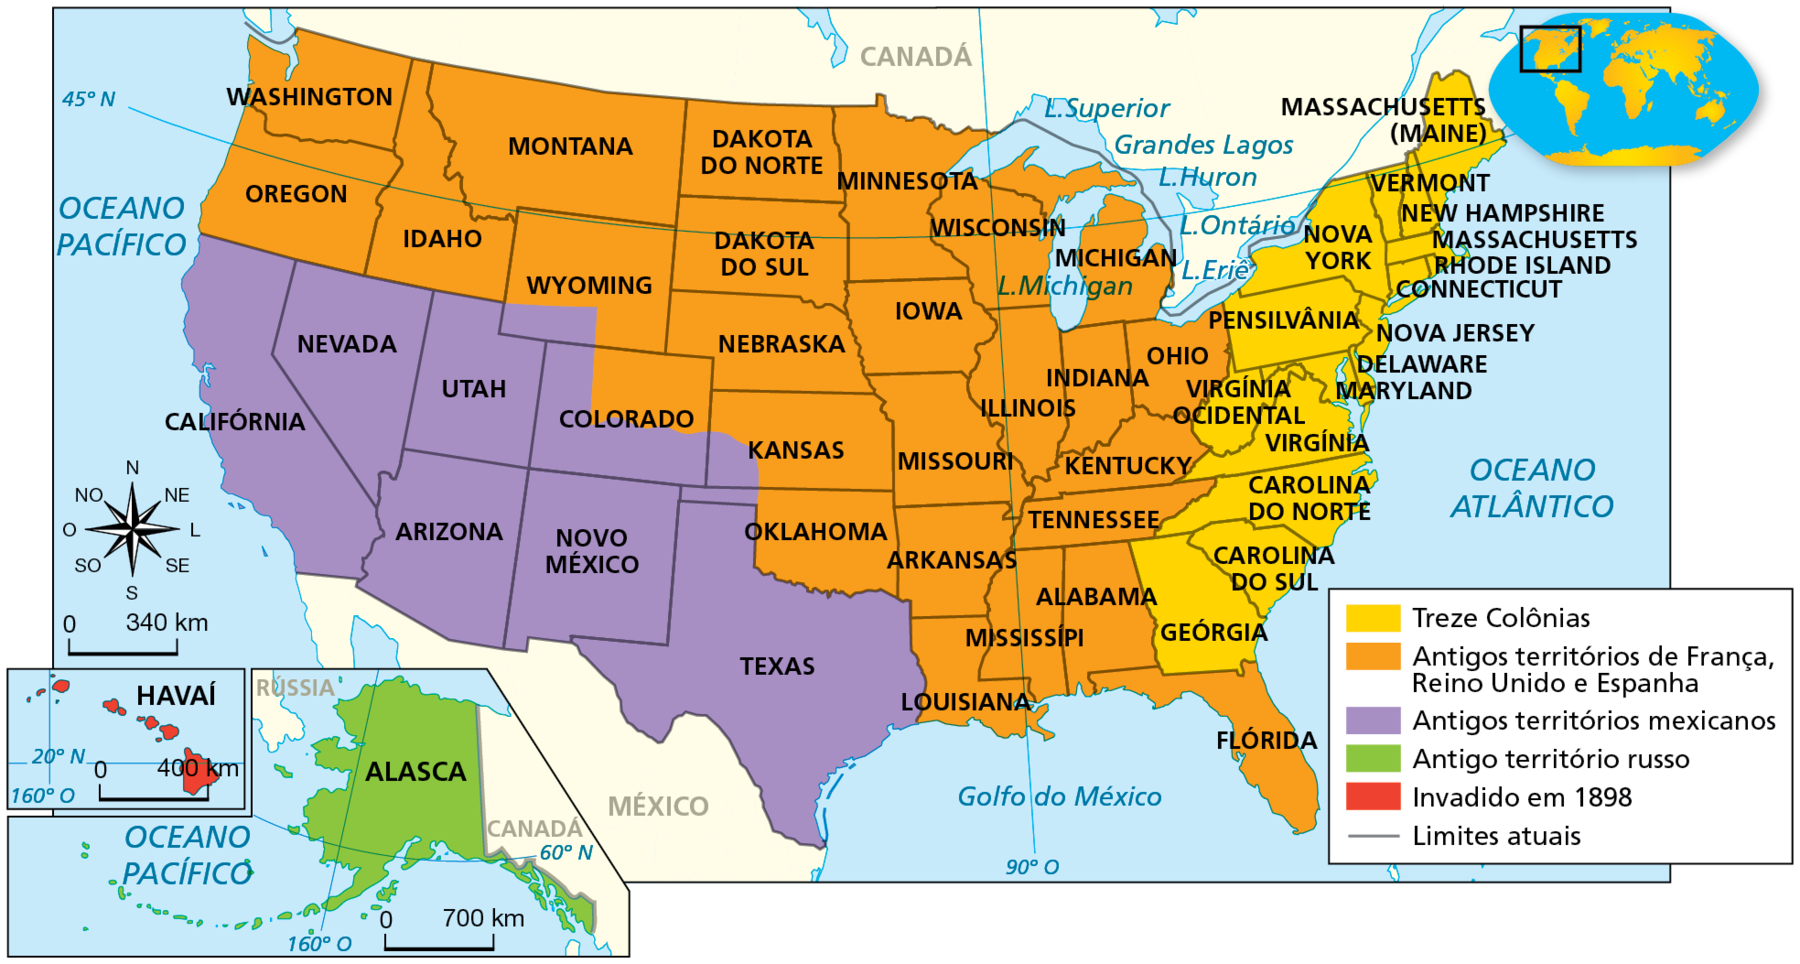 Mapa. Expansão territorial dos Estados Unidos. Século dezenove. Mapa representando o território dos Estados Unidos, com áreas destacadas em diferentes cores.
Em amarelo, as “Treze colônias”, compreendendo Geórgia, Carolina do Sul, Carolina do Norte, Virgínia, Virgínia Ocidental, Maryland, Delaware, Nova Jersey, Pensilvânia, Connecticut, Rhode Island, Massachusetts, New Hampshire, Vermont, Massachusetts (Maine) e Nova Iorque. 
Em laranja, “Antigos territórios de França, Reino Unido e Espanha”, compreendendo Flórida, Louisiana, Mississípi, Alabama, Tennesse, Kentucky, Ohio, Michigan, Indiana, Illinois, Missouri, Arkansas, Iowa, Wisconsin, Minnesota, Nebraska, Dakota do Sul, Dakota do Norte, Montana, Idaho, Oregon, Washington e partes do Colorado, do Kansas, de Oklahoma e de Wyoming.
Em roxo, “Antigos territórios mexicanos”, compreendendo Texas, Novo México, Utah, Arizona, Nevada, Califórnia e partes do Colorado, do Kansas, de Oklahoma e de Wyoming.
Em verde, “Antigo território russo”. Destaque para uma pequena área, ampliada no canto inferior esquerdo do mapa, compreendendo o Alasca, a oeste do Canadá.
Em vermelho, “Invadido em 1898”.  Destaque para uma pequena área, ampliada no canto inferior esquerdo do mapa, compreendendo o Havaí, conjunto de ilhas no Oceano Pacífico na altura do paralelo 20 Norte. 
No canto inferior esquerdo, rosa dos ventos e escala de 0 a 340 quilômetros. No mapa do Alasca, escala de 0 a 700 quilômetros. No mapa do Havaí, escala de 0 a 400 quilômetros.